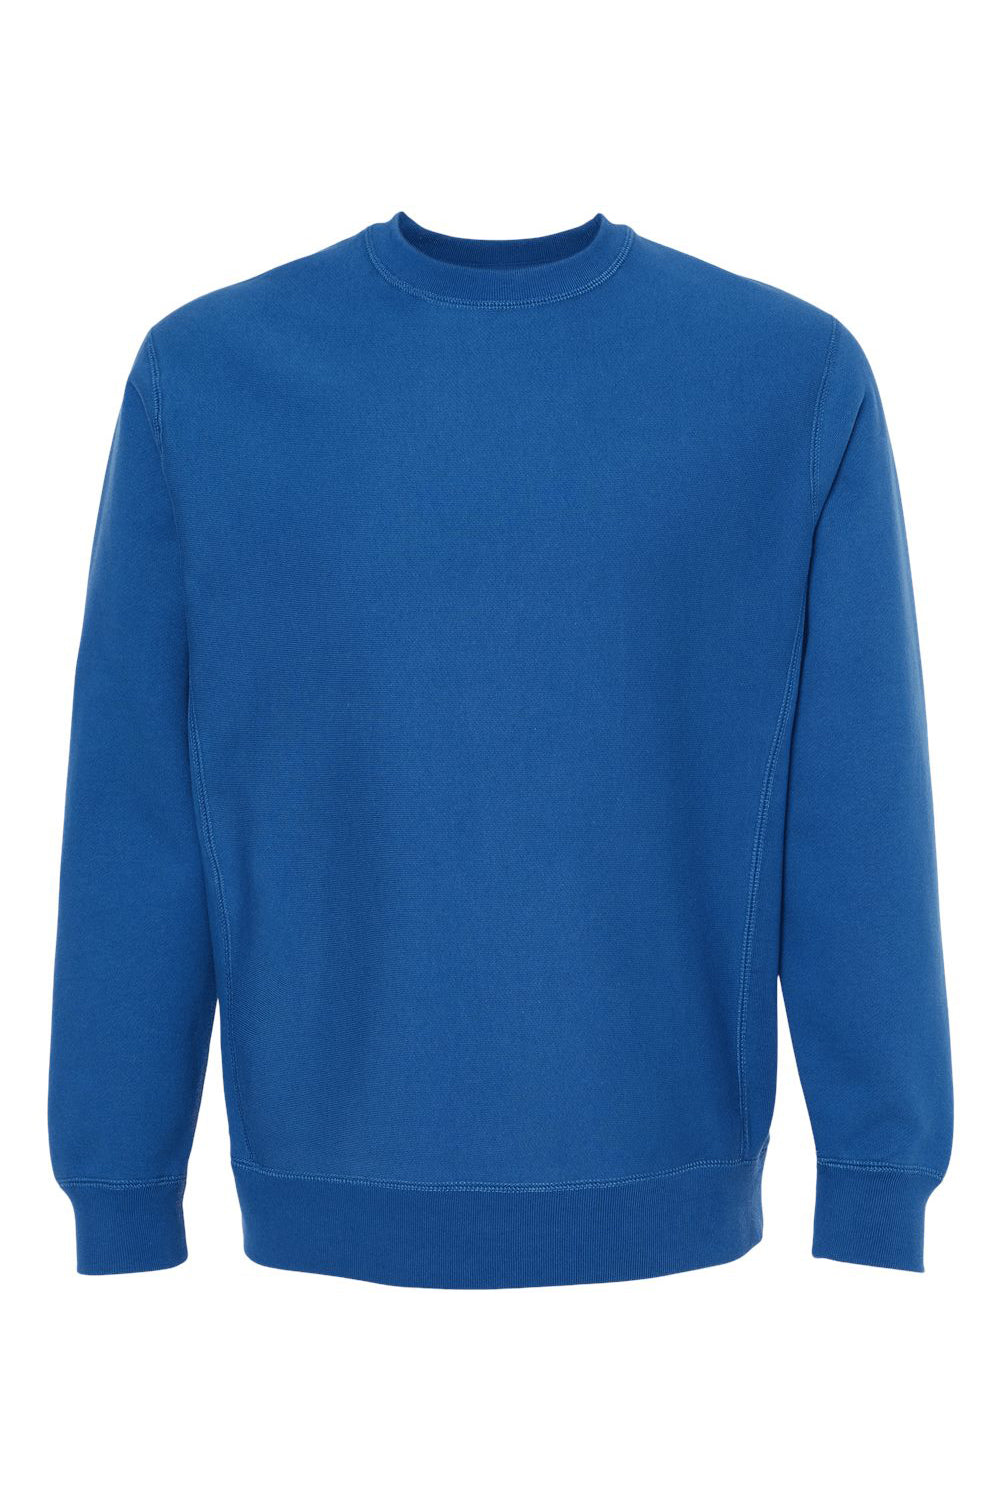 Independent Trading Co. IND5000C Mens Legend Crewneck Sweatshirt Royal Blue Flat Front